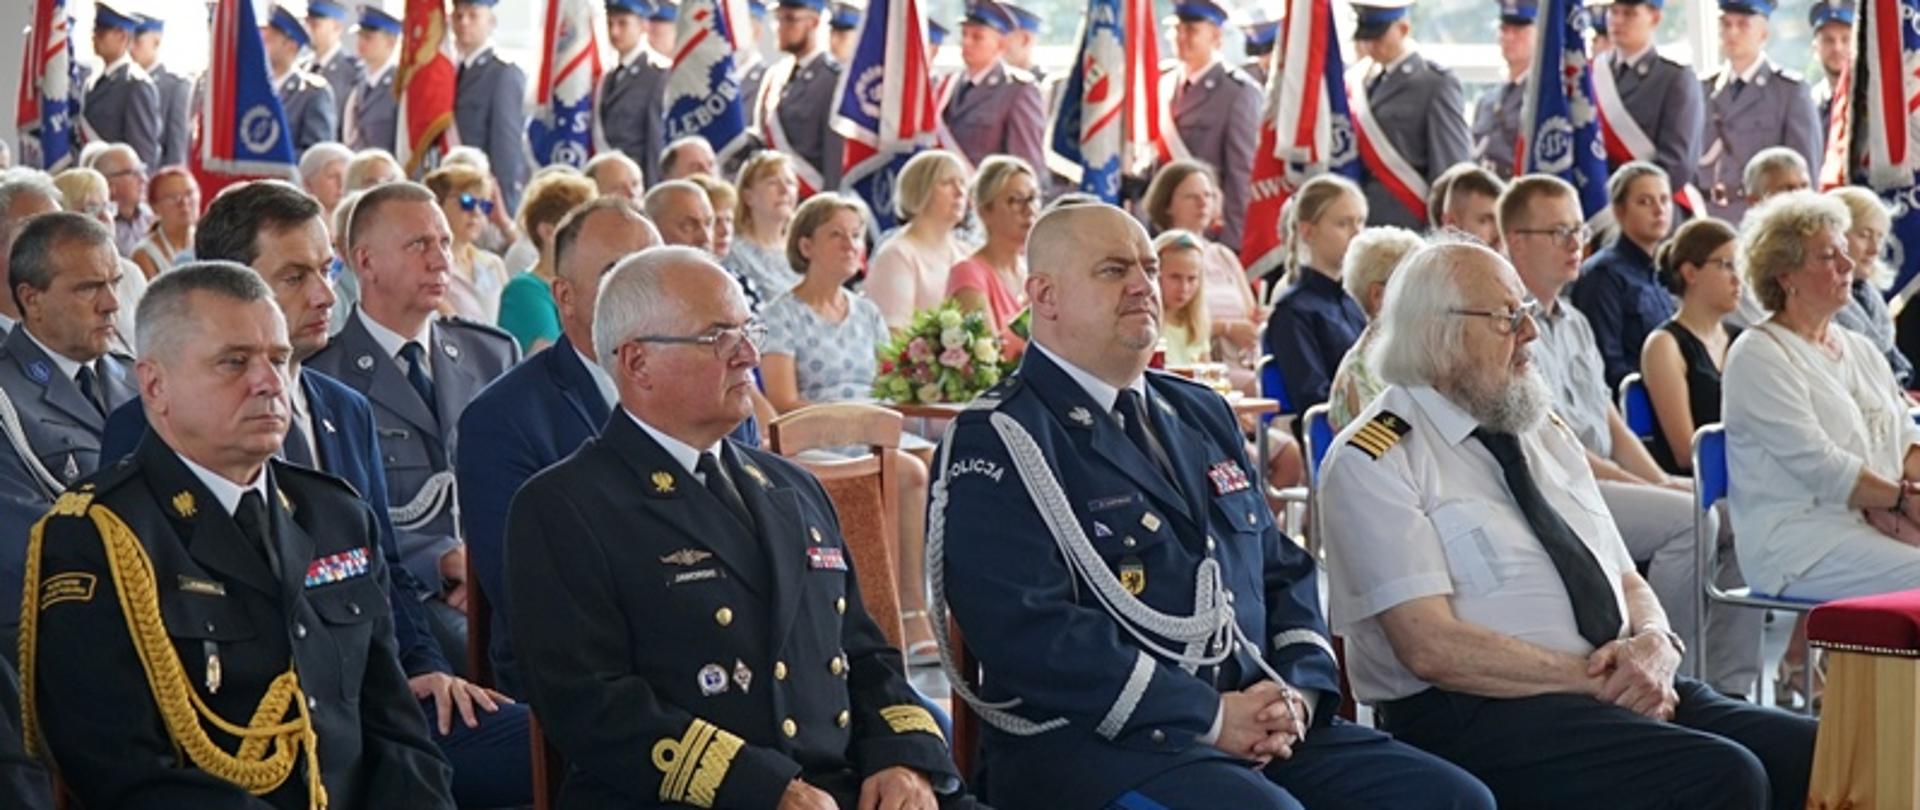 Przedstawiciele służb mundurowych oraz zaproszeni goście siedzą na krzesłach podczas uroczystości.